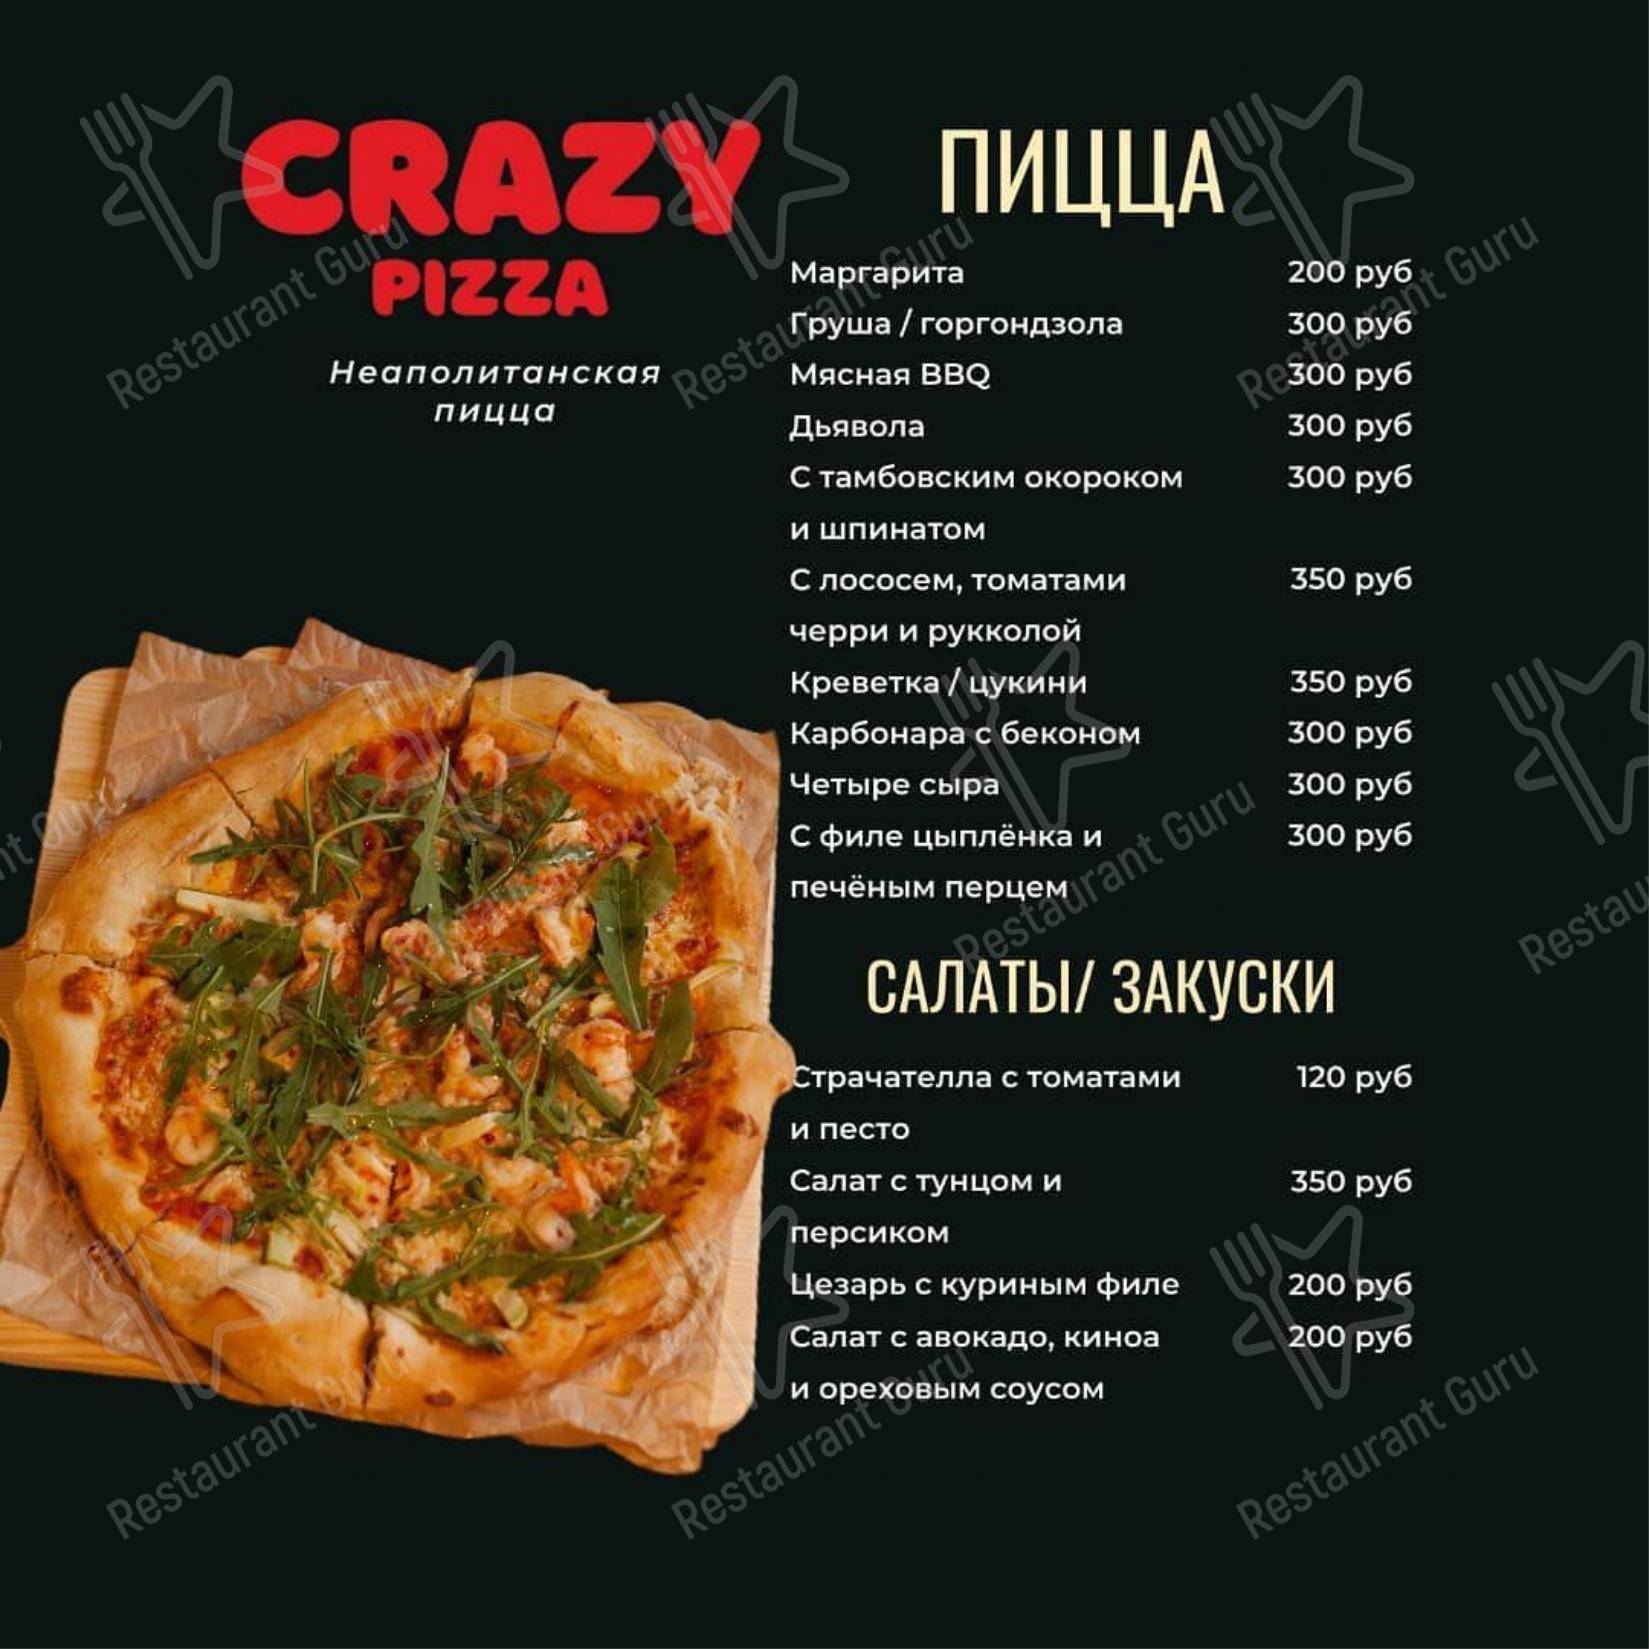 Crazy pizza енисейская ул 20. Crazy menu. Crazy pizza Талнах меню. Crazy pizza Енисейская ул., 20 меню. Arena Crazy pizza.